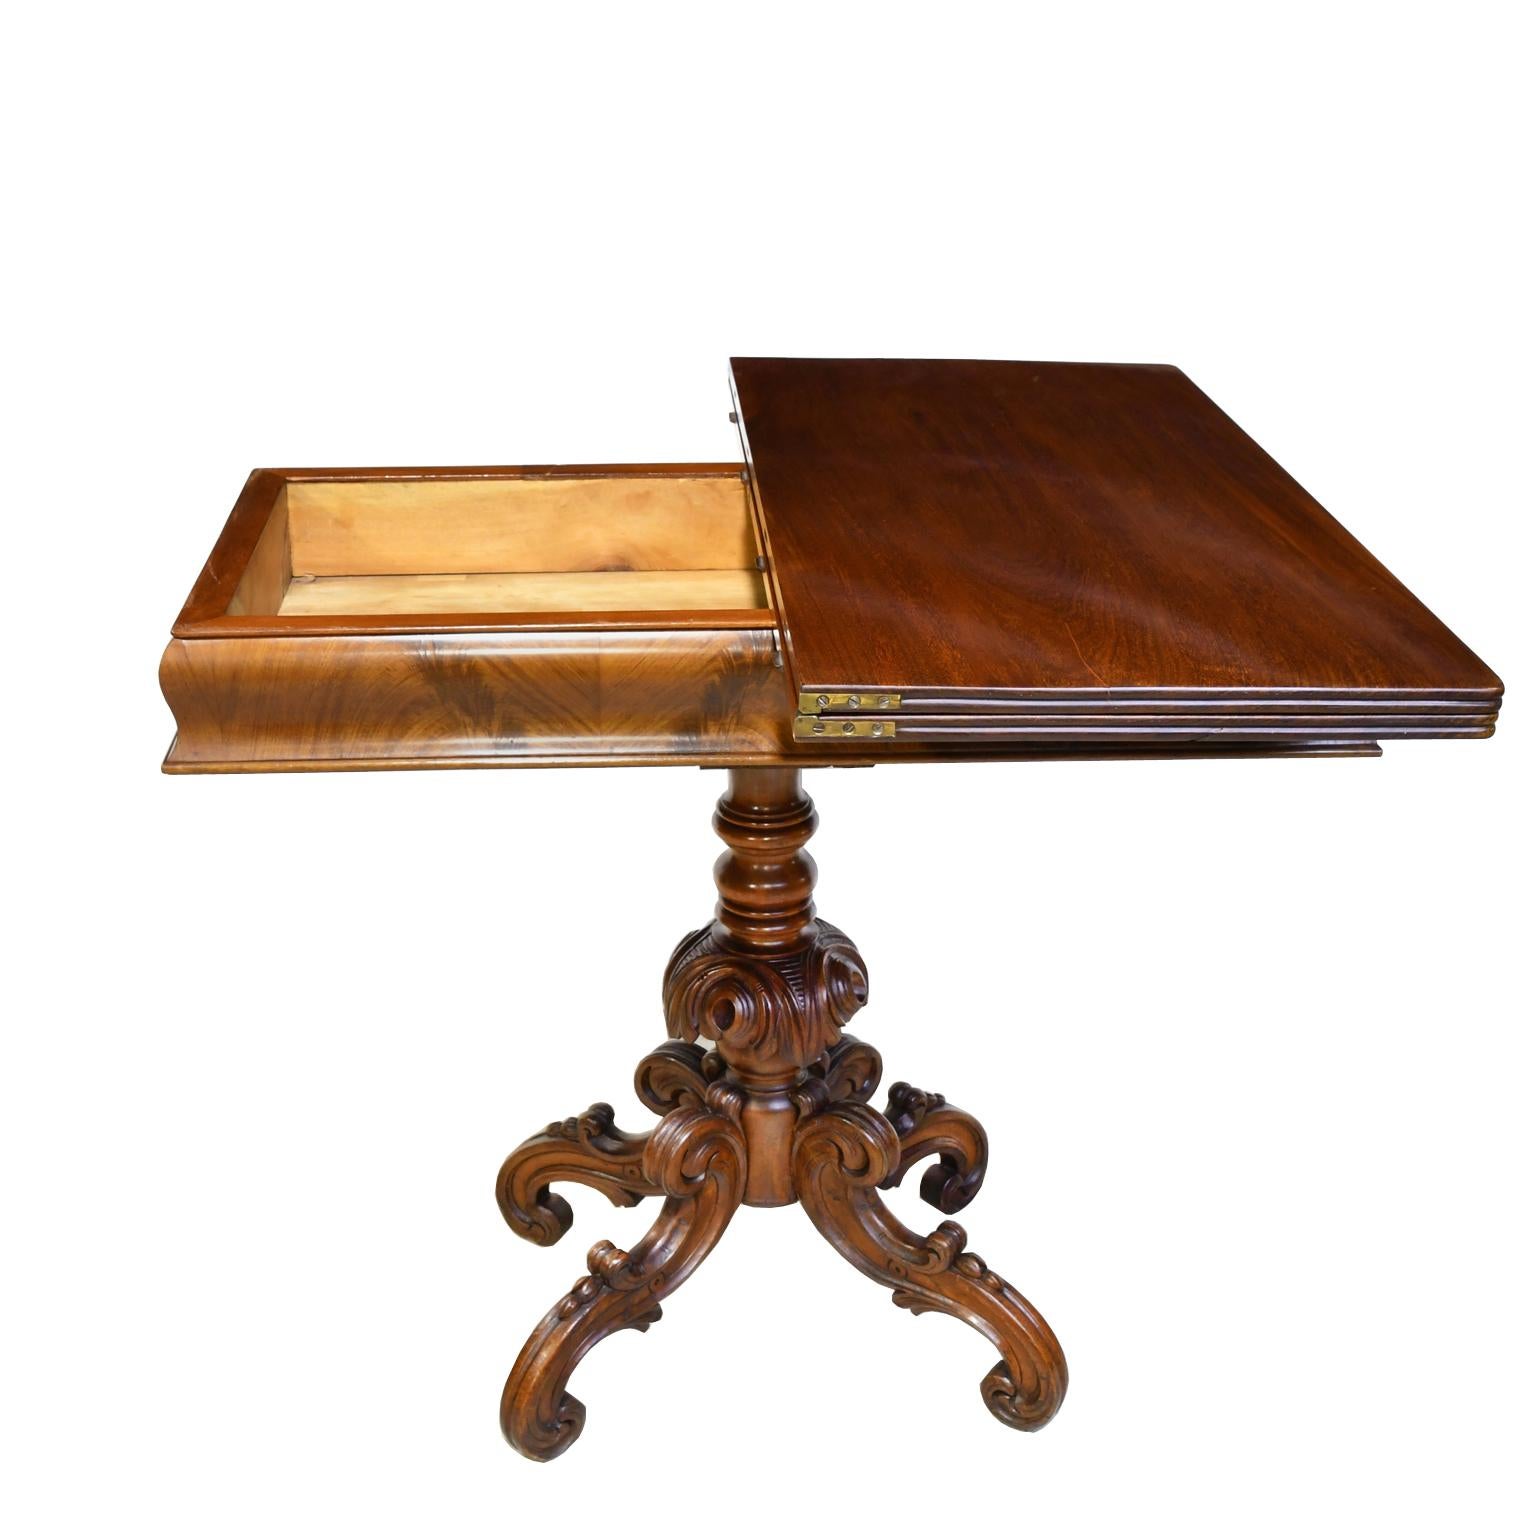 Rococo Revival Rococo-Revival Scandinavian Game Table, circa 1850 For Sale